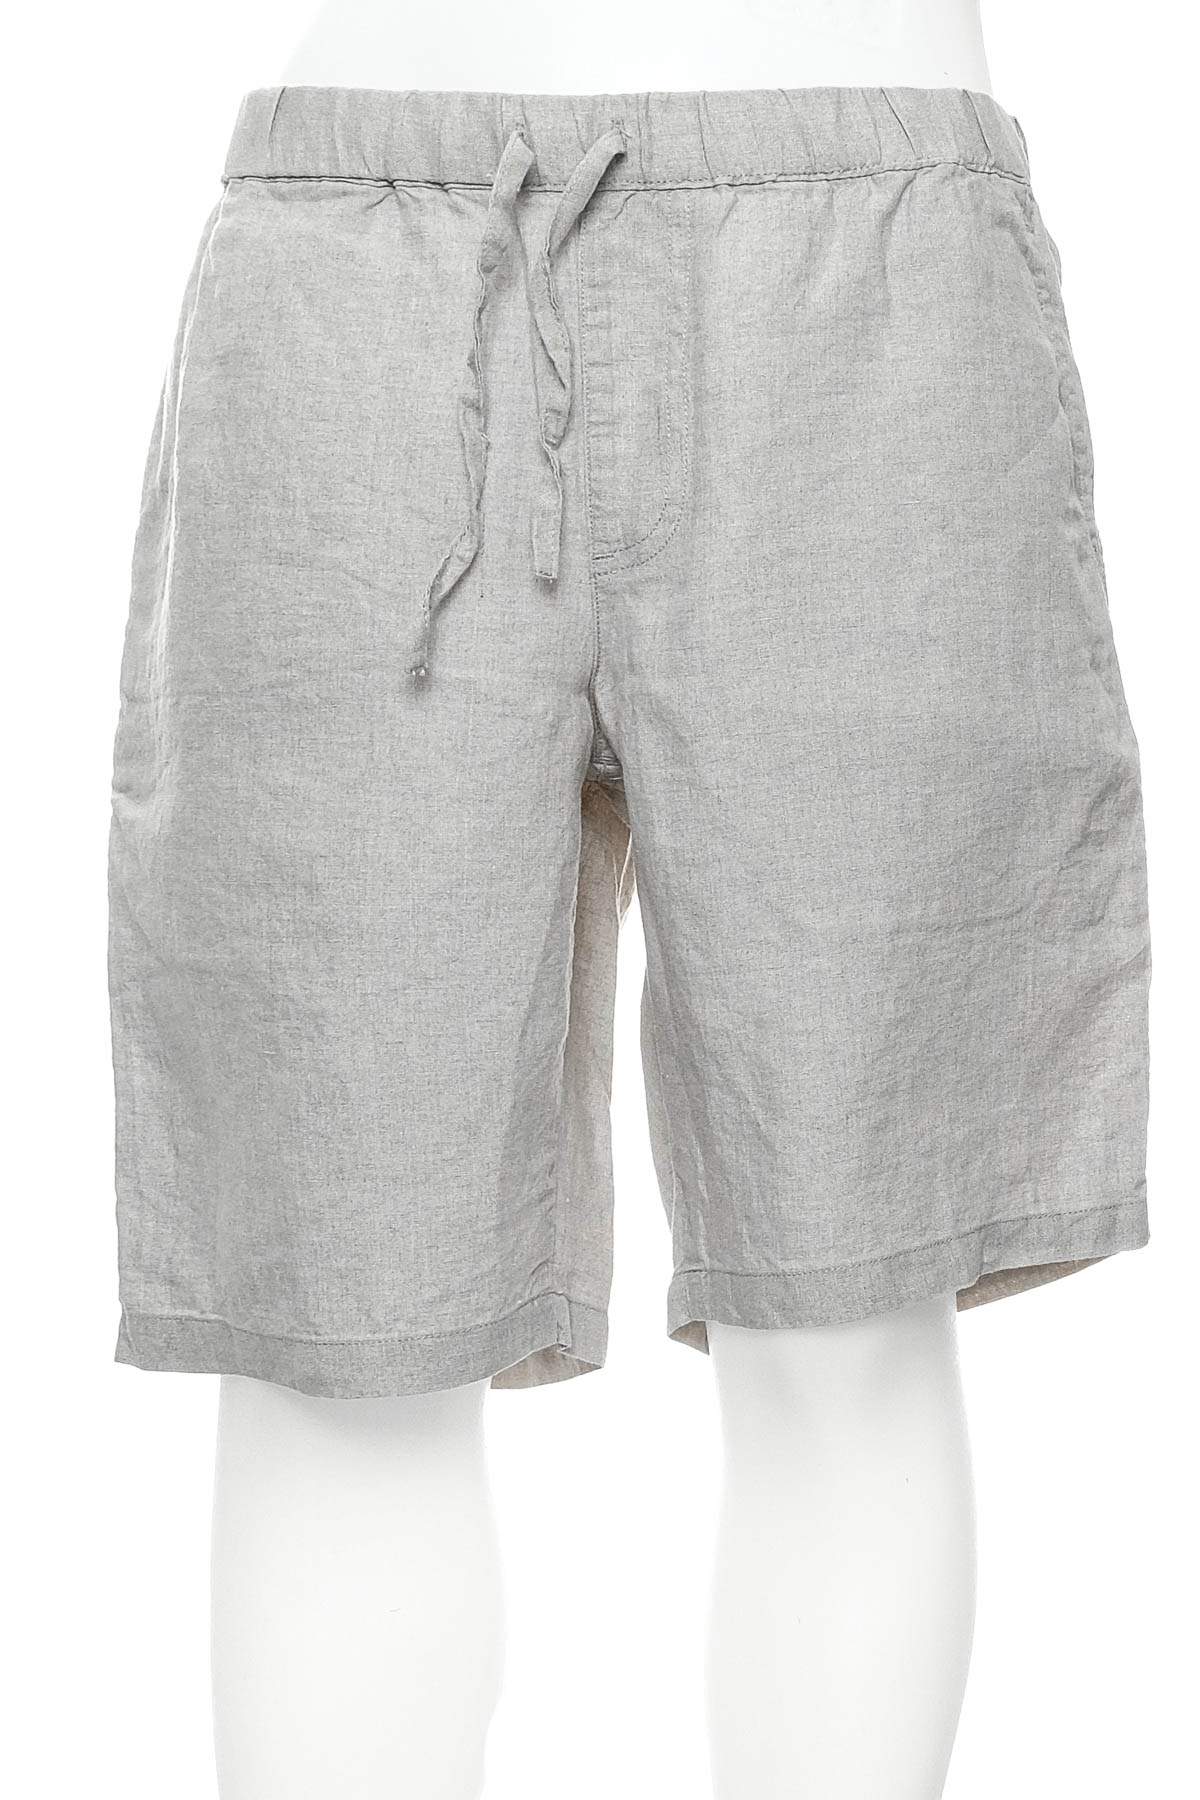 Men's shorts - MUJI - 0